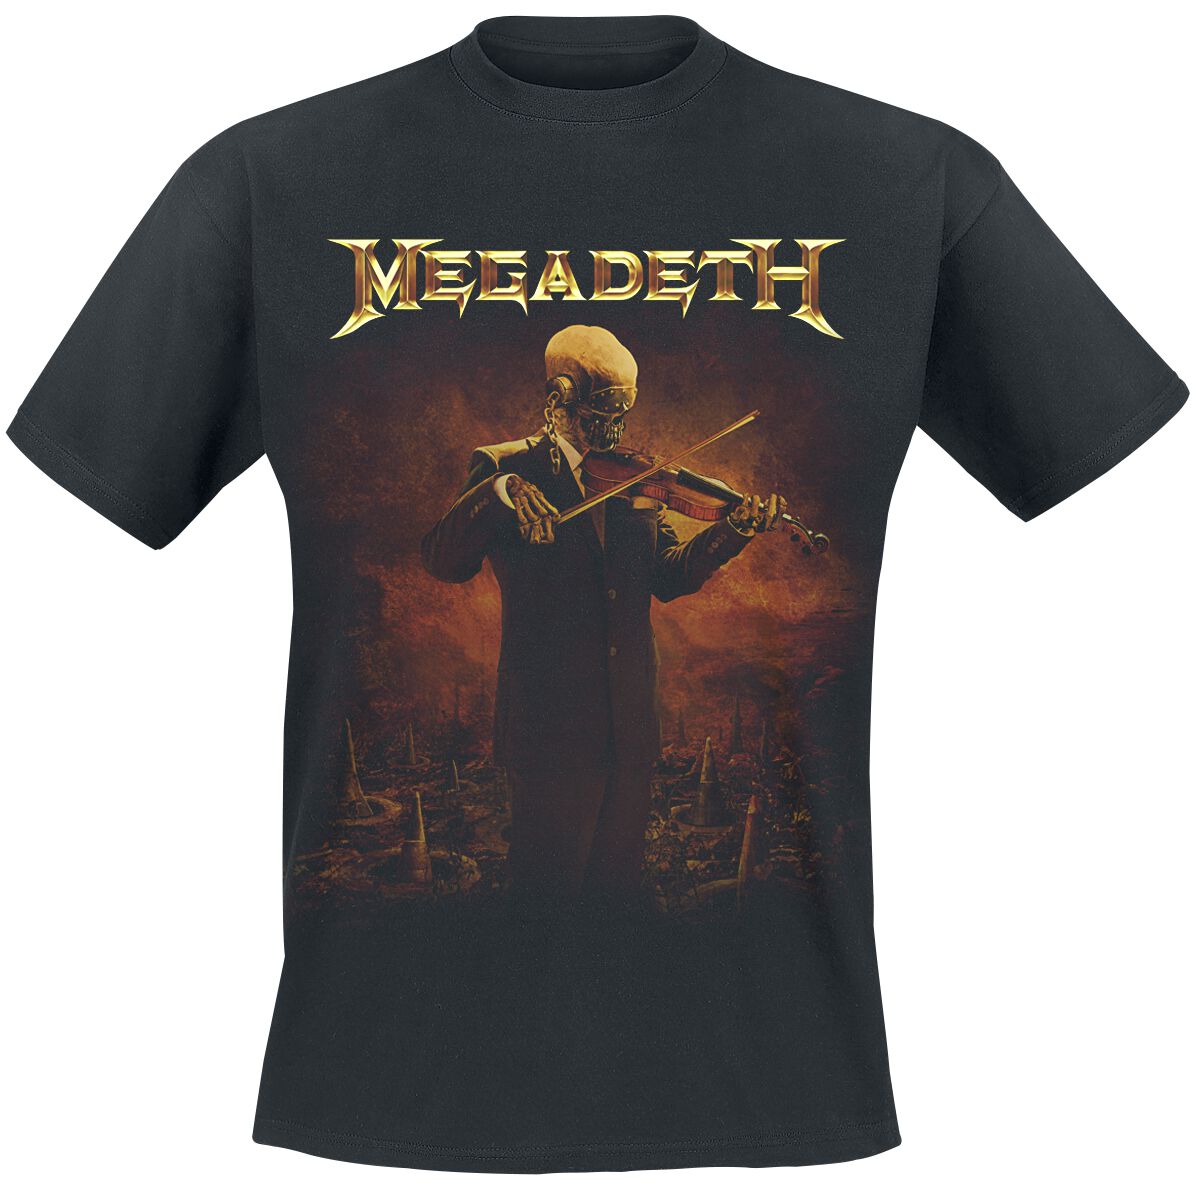 Megadeth T-Shirt - Symphony For Destruction - S bis XXL - für Männer - Größe XL - schwarz  - Lizenziertes Merchandise!